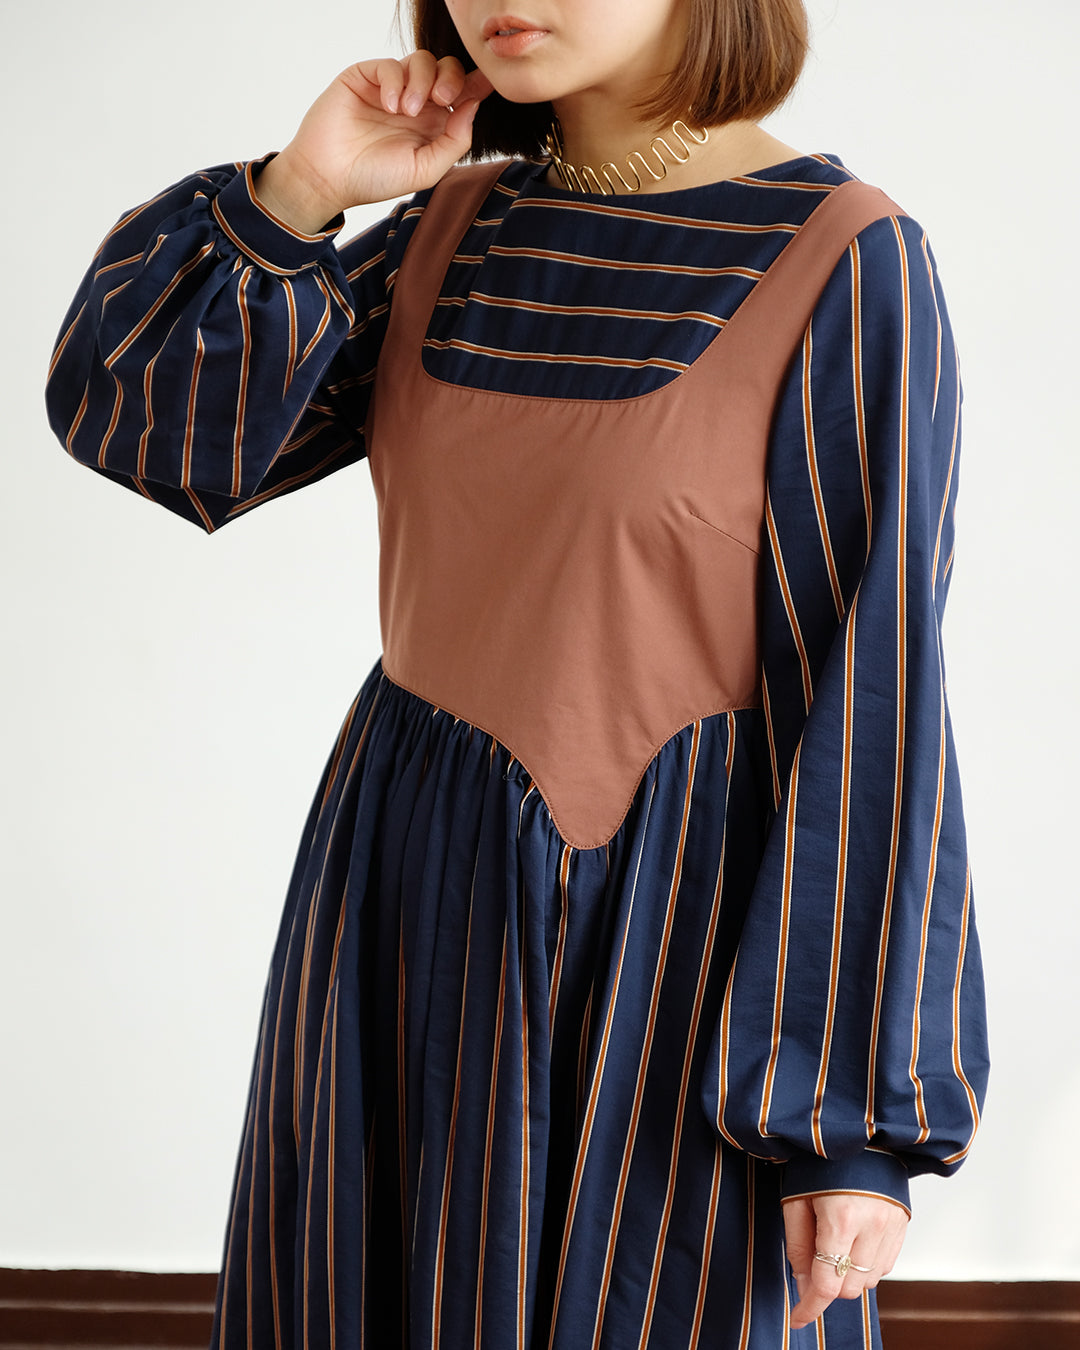 Alison 2 in 1 Striped Dress